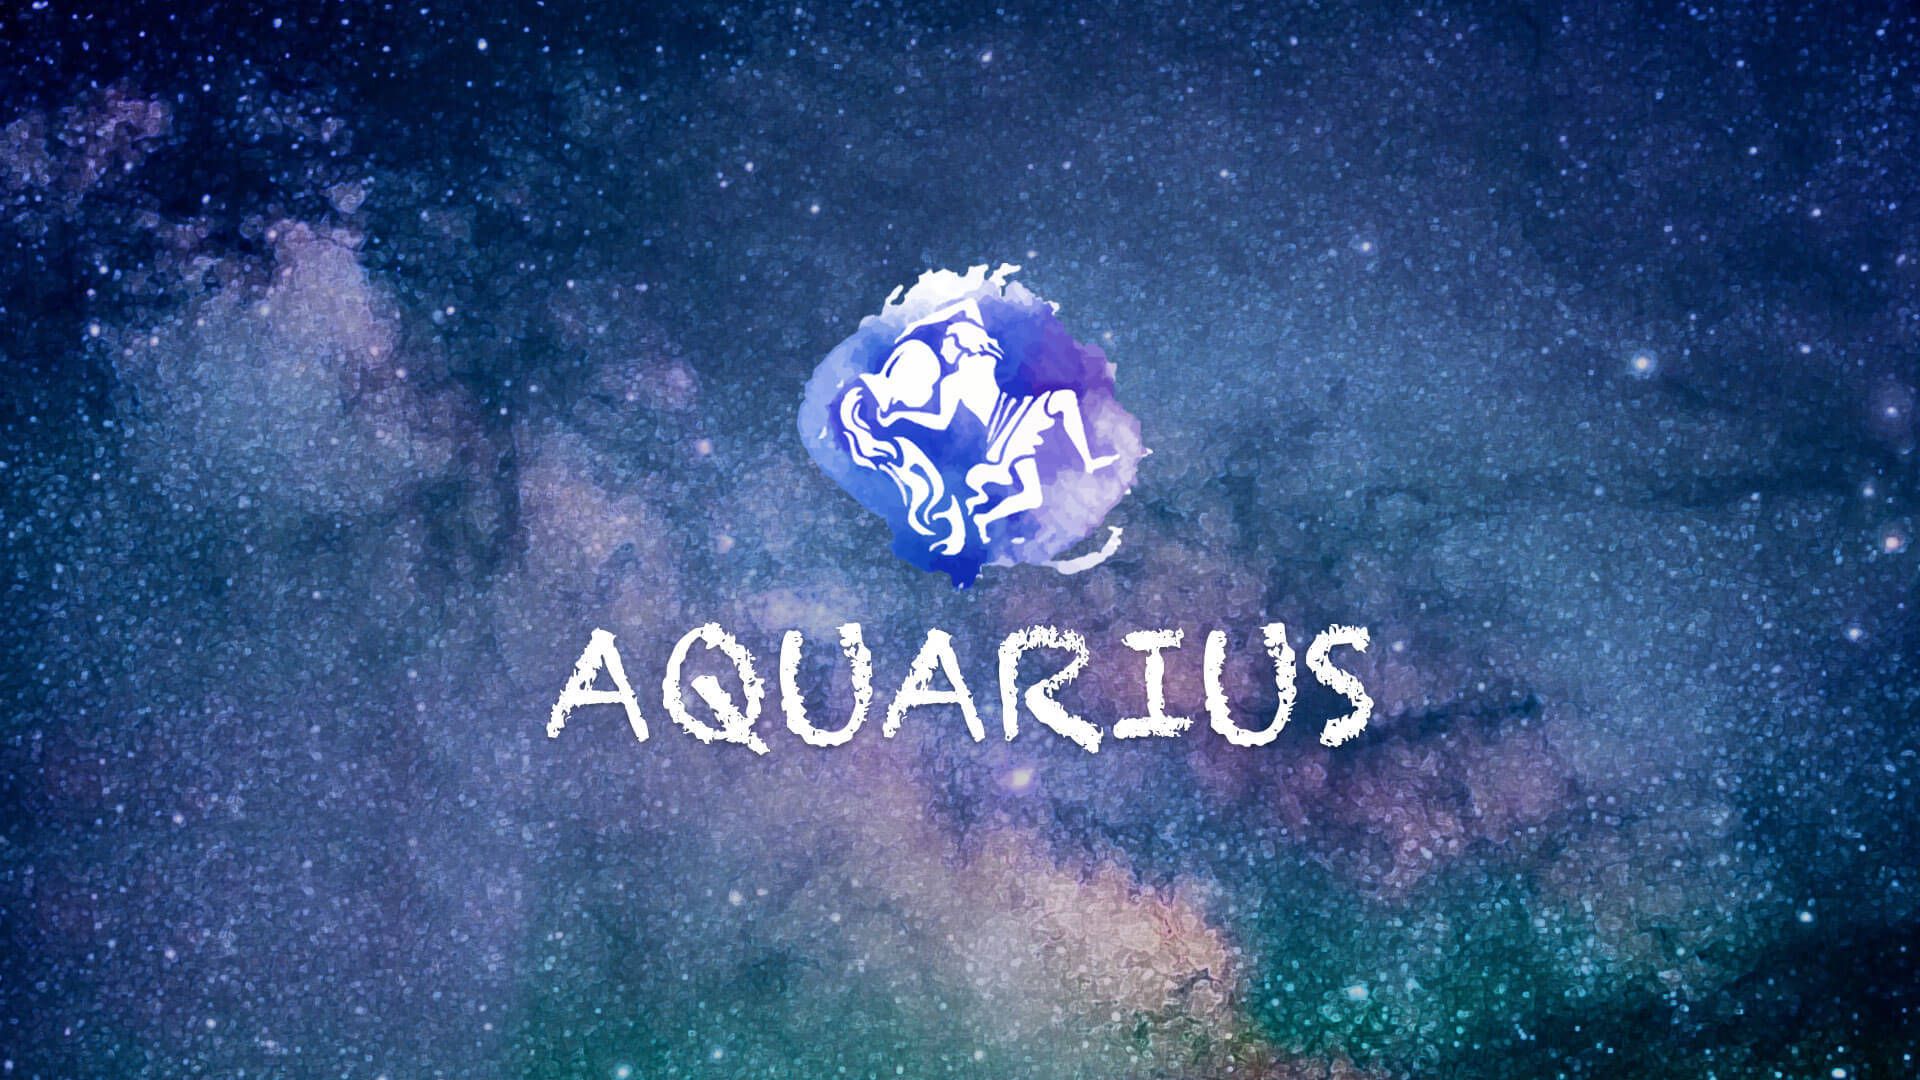 Aquarius Wallpapers - 4k, HD Aquarius Backgrounds on WallpaperBat